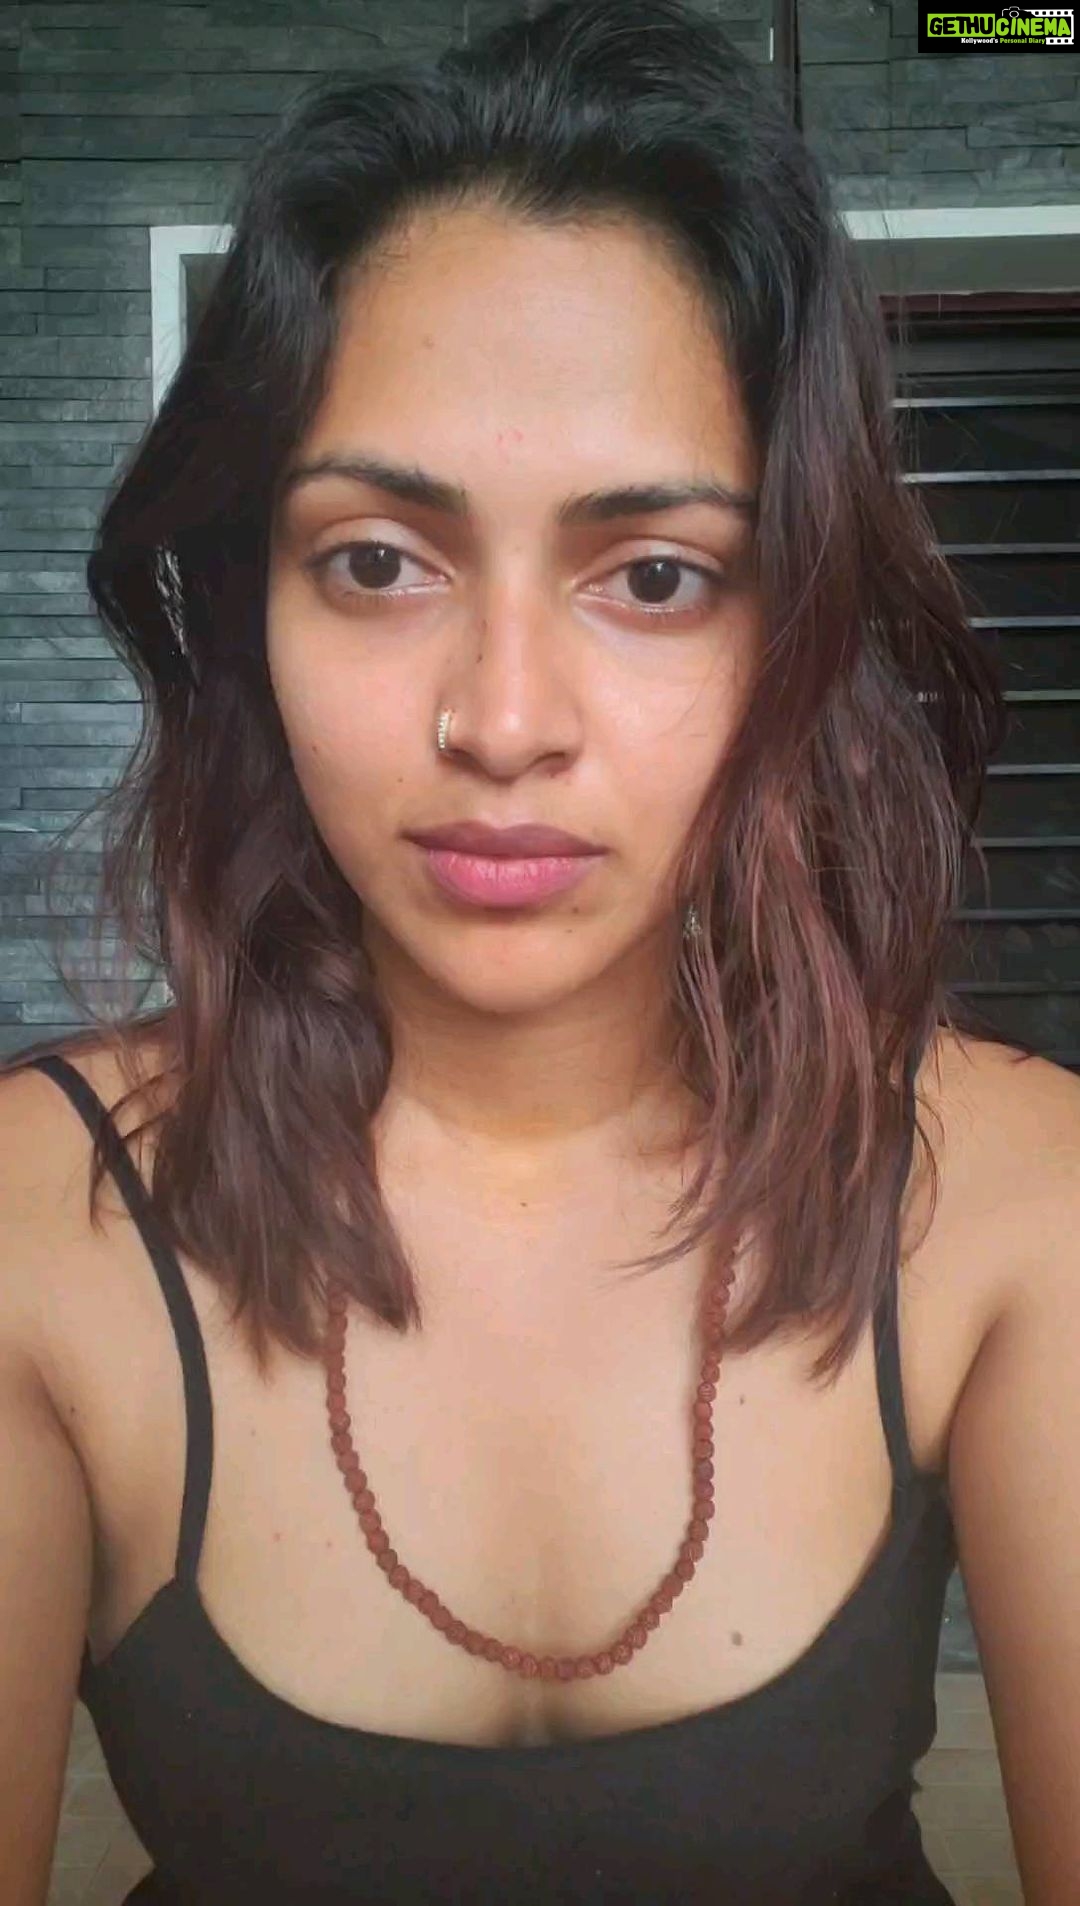 Actress Amalapaul Sex Video Porn - Actress Amala Paul Top 100 Instagram Photos and Posts - Gethu Cinema